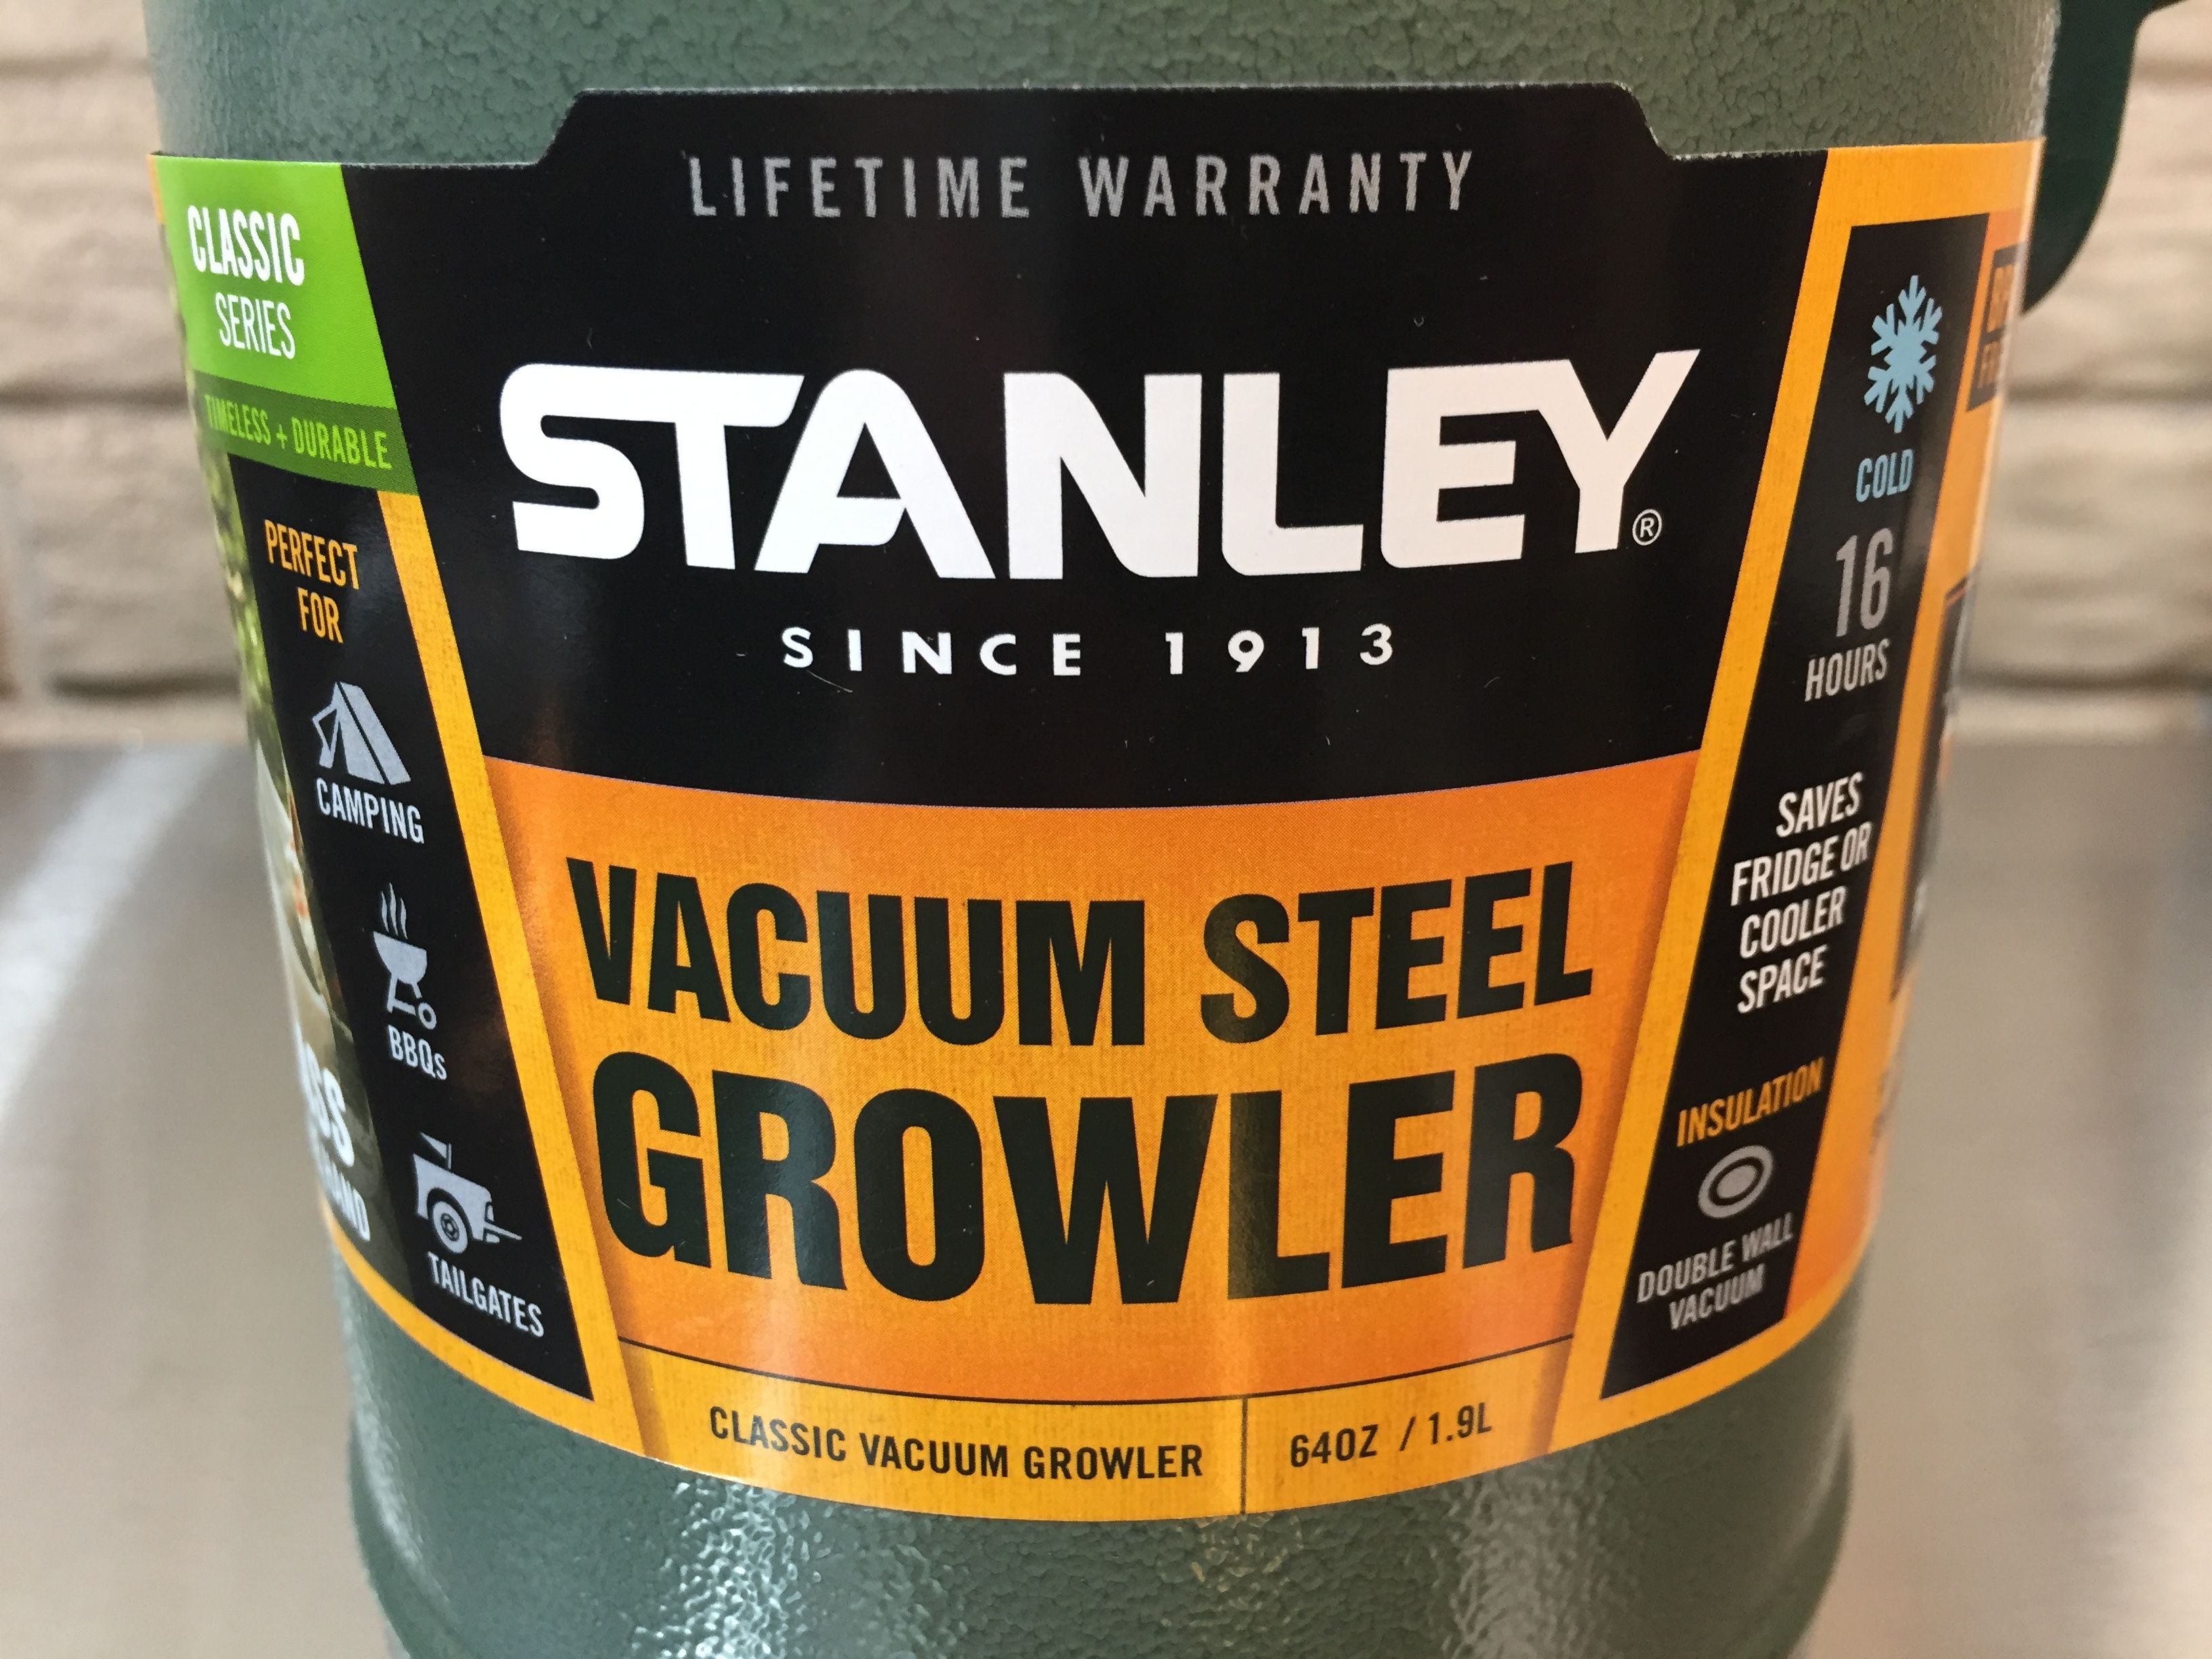 STANLEY GROWLER REVIEW 2021 - 64oz Beer Growler Outdoor Gift Set 